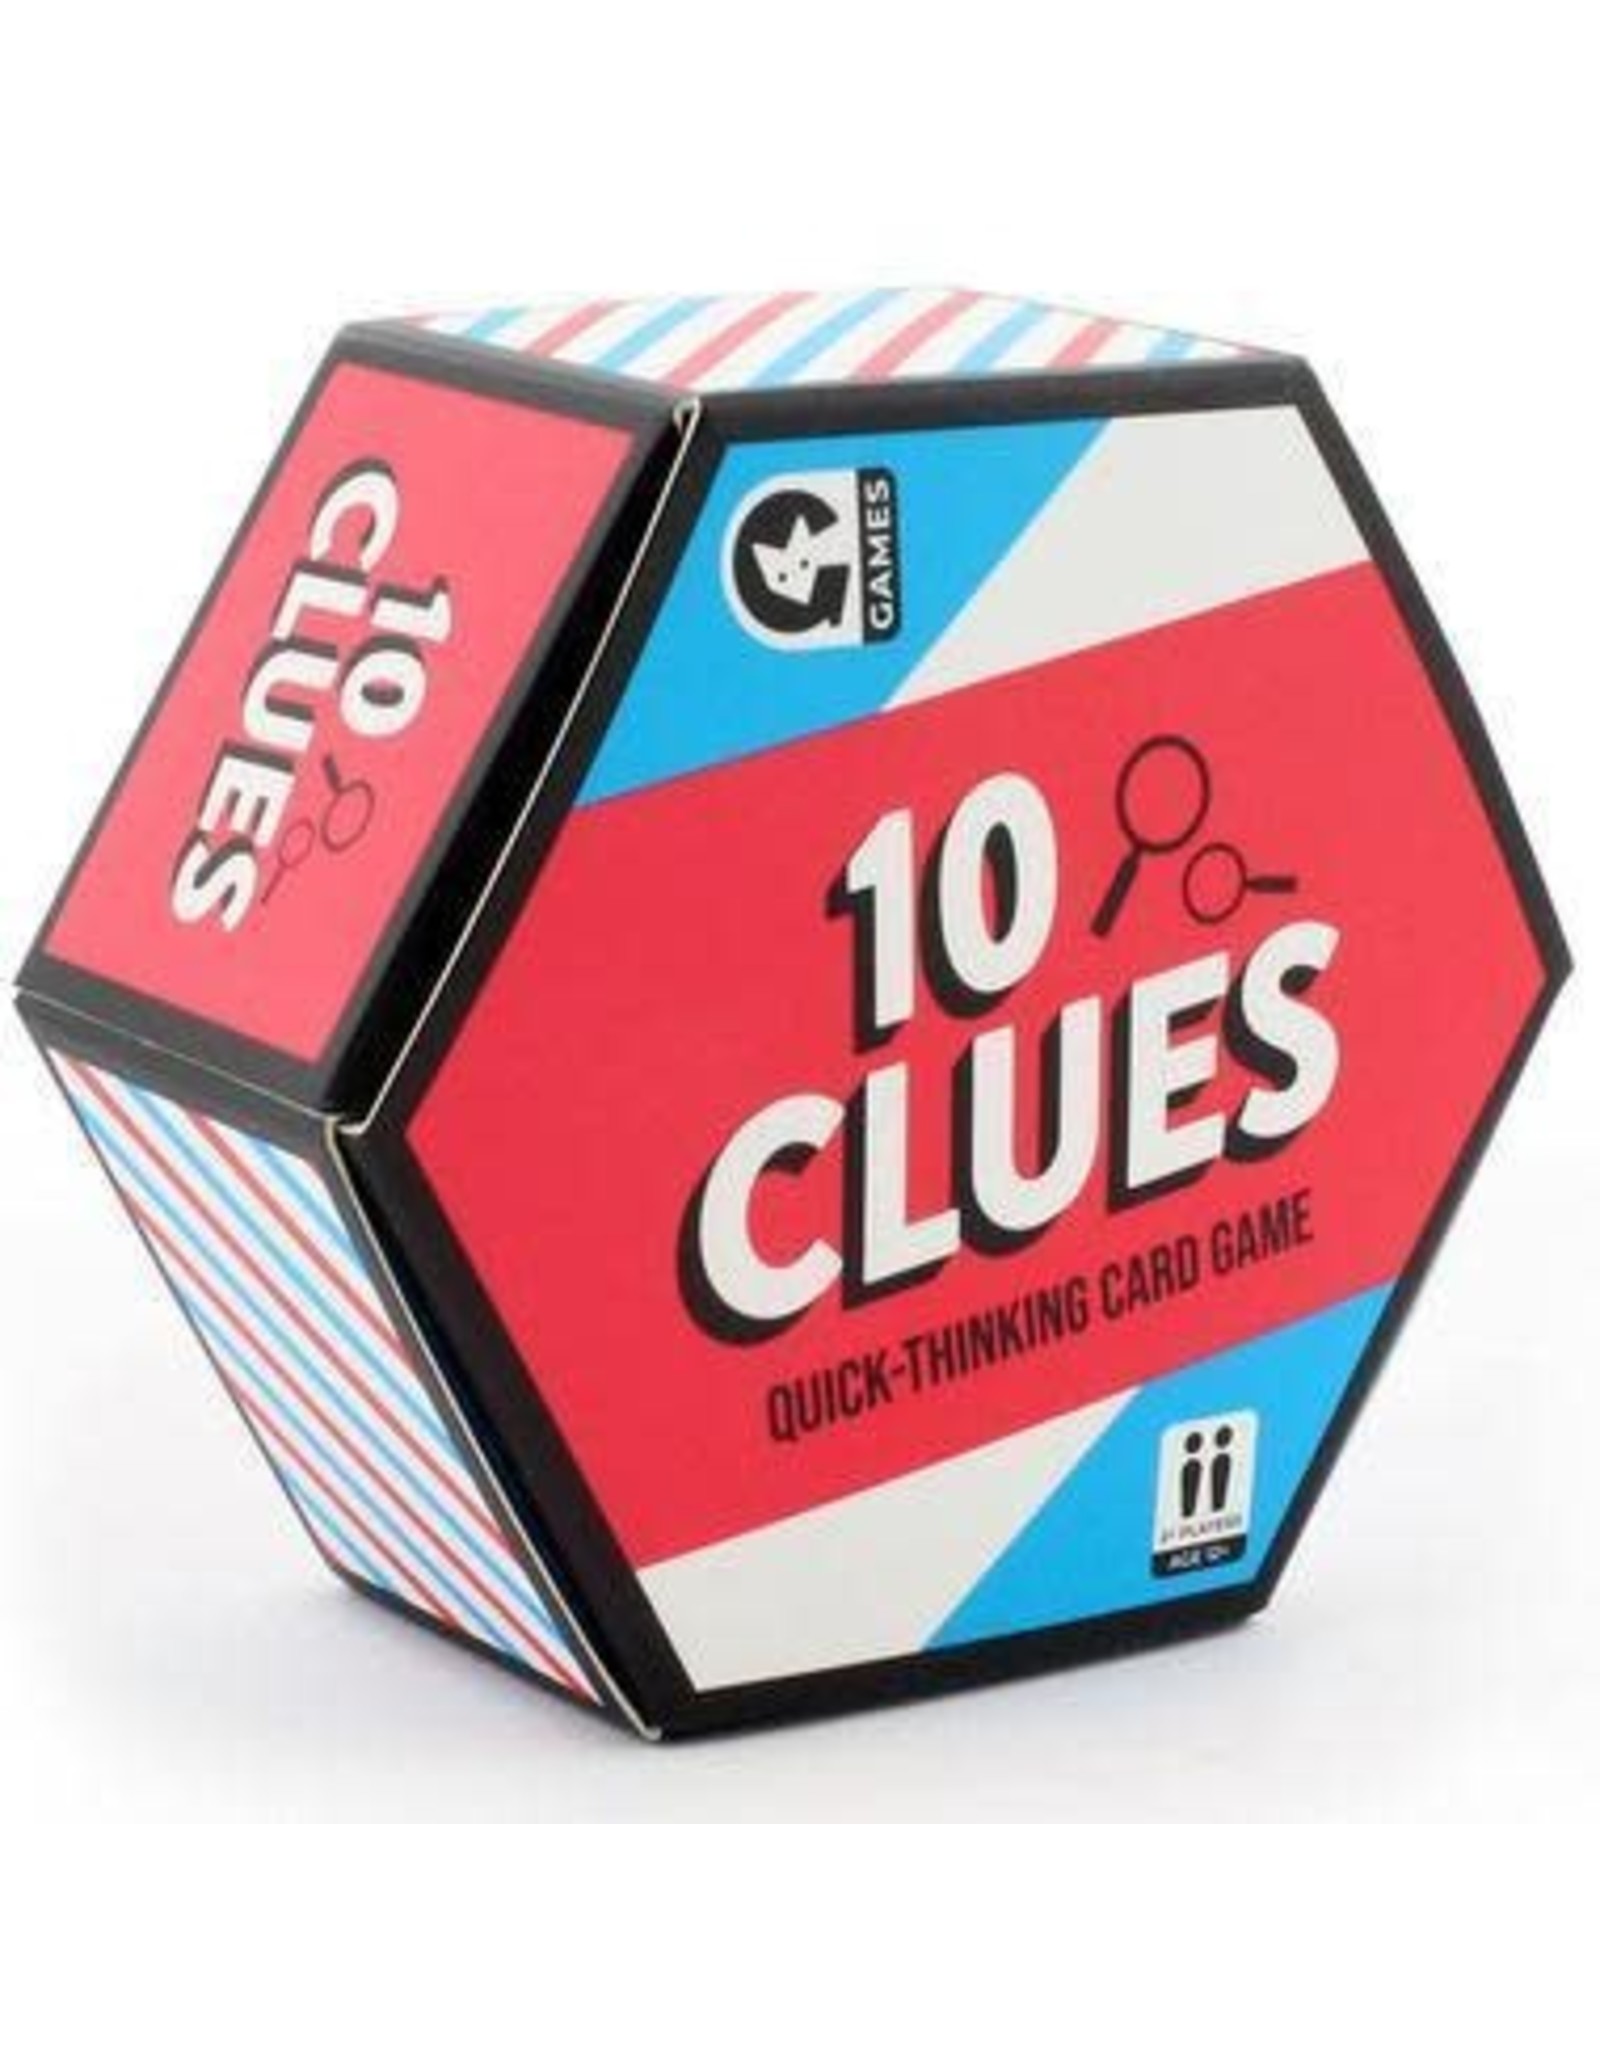 10 Clues